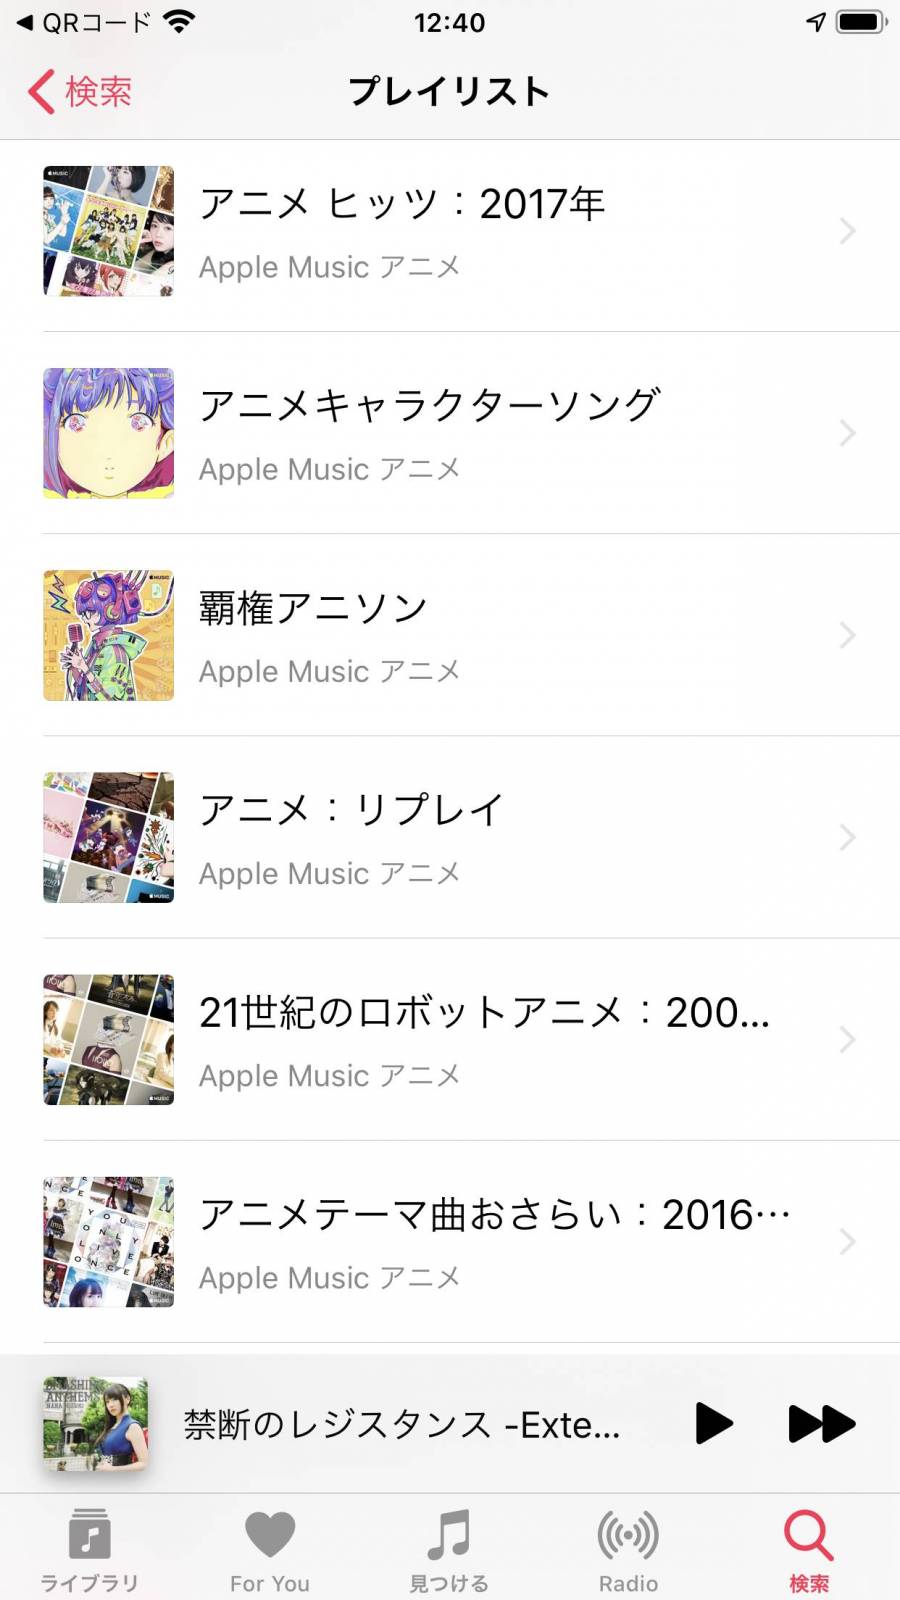 『Apple Music』検索画面 「アニメ」で検索した結果